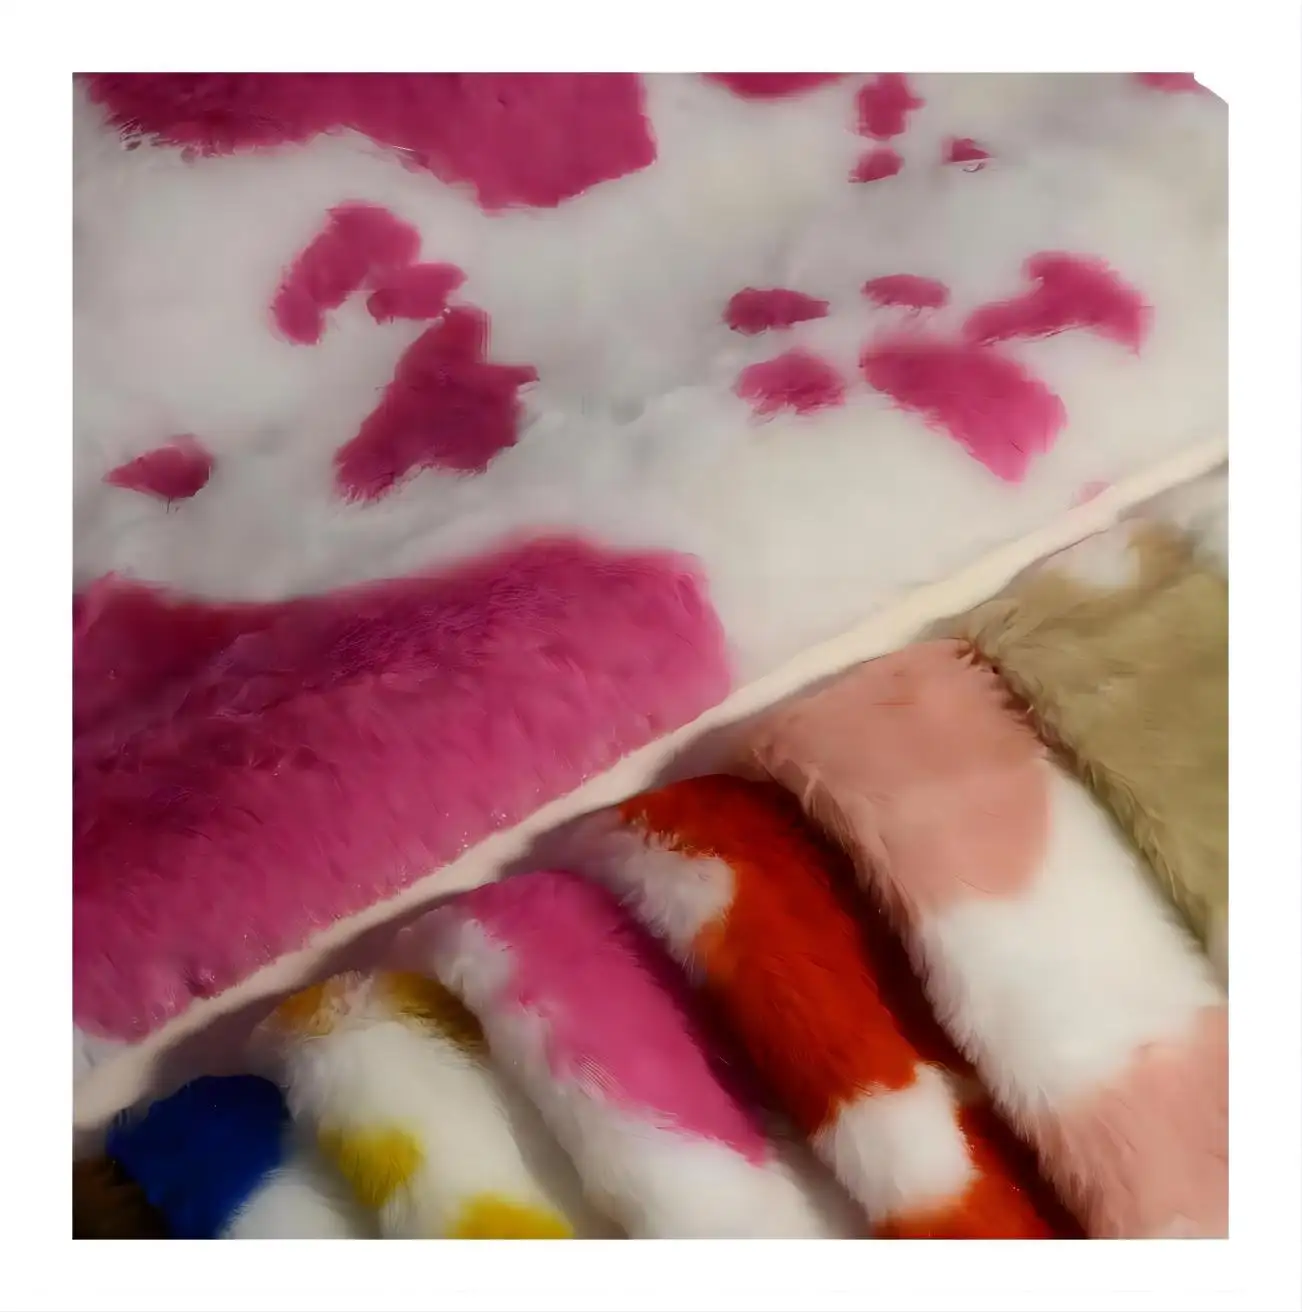 Estampado de vaca estampado suave juguete tela de felpa al por mayor impreso piel de conejo artificial invierno/juguetes/ropa